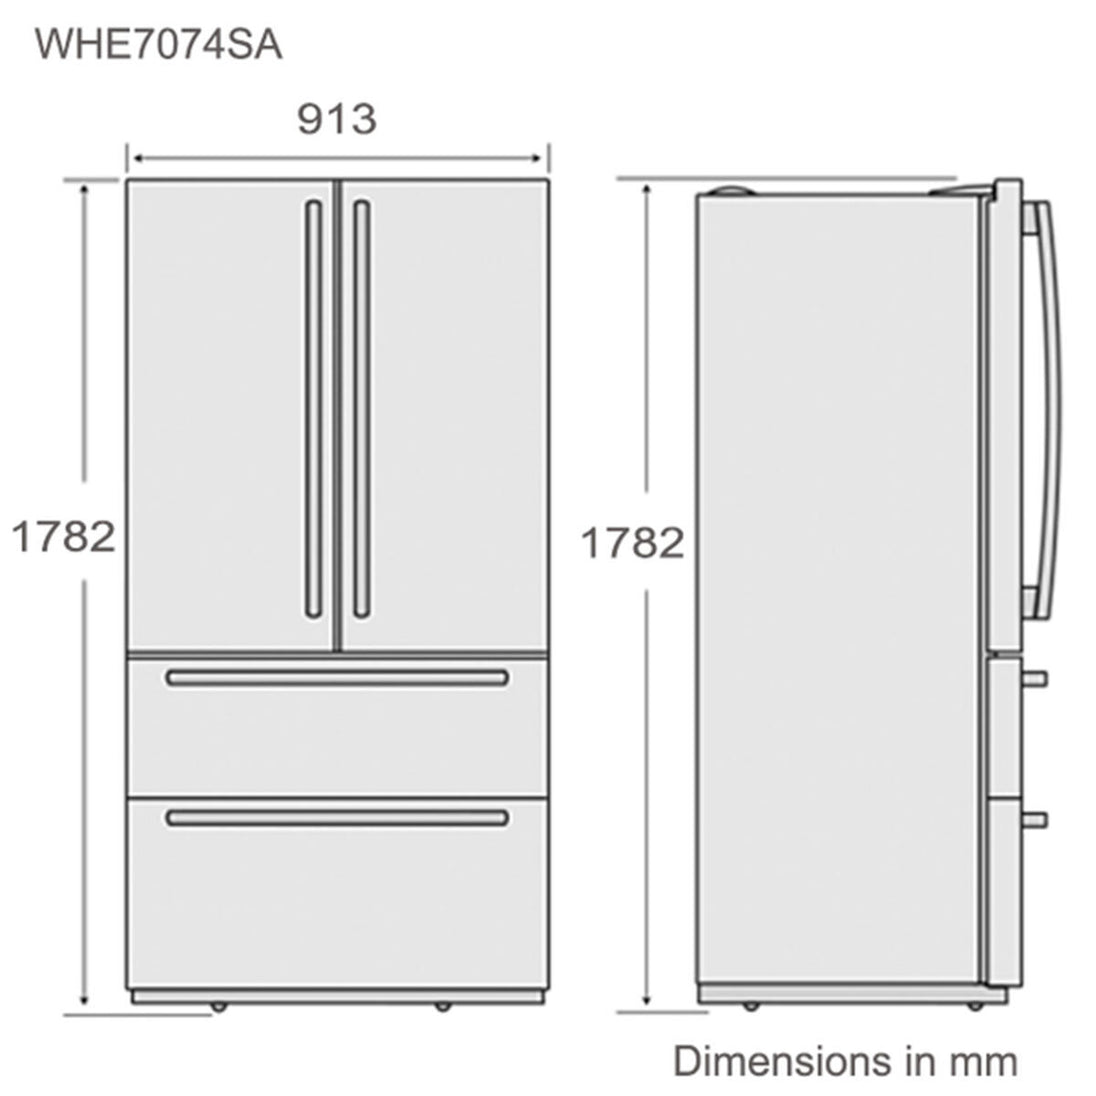 WHE7074SA-Dimension-high